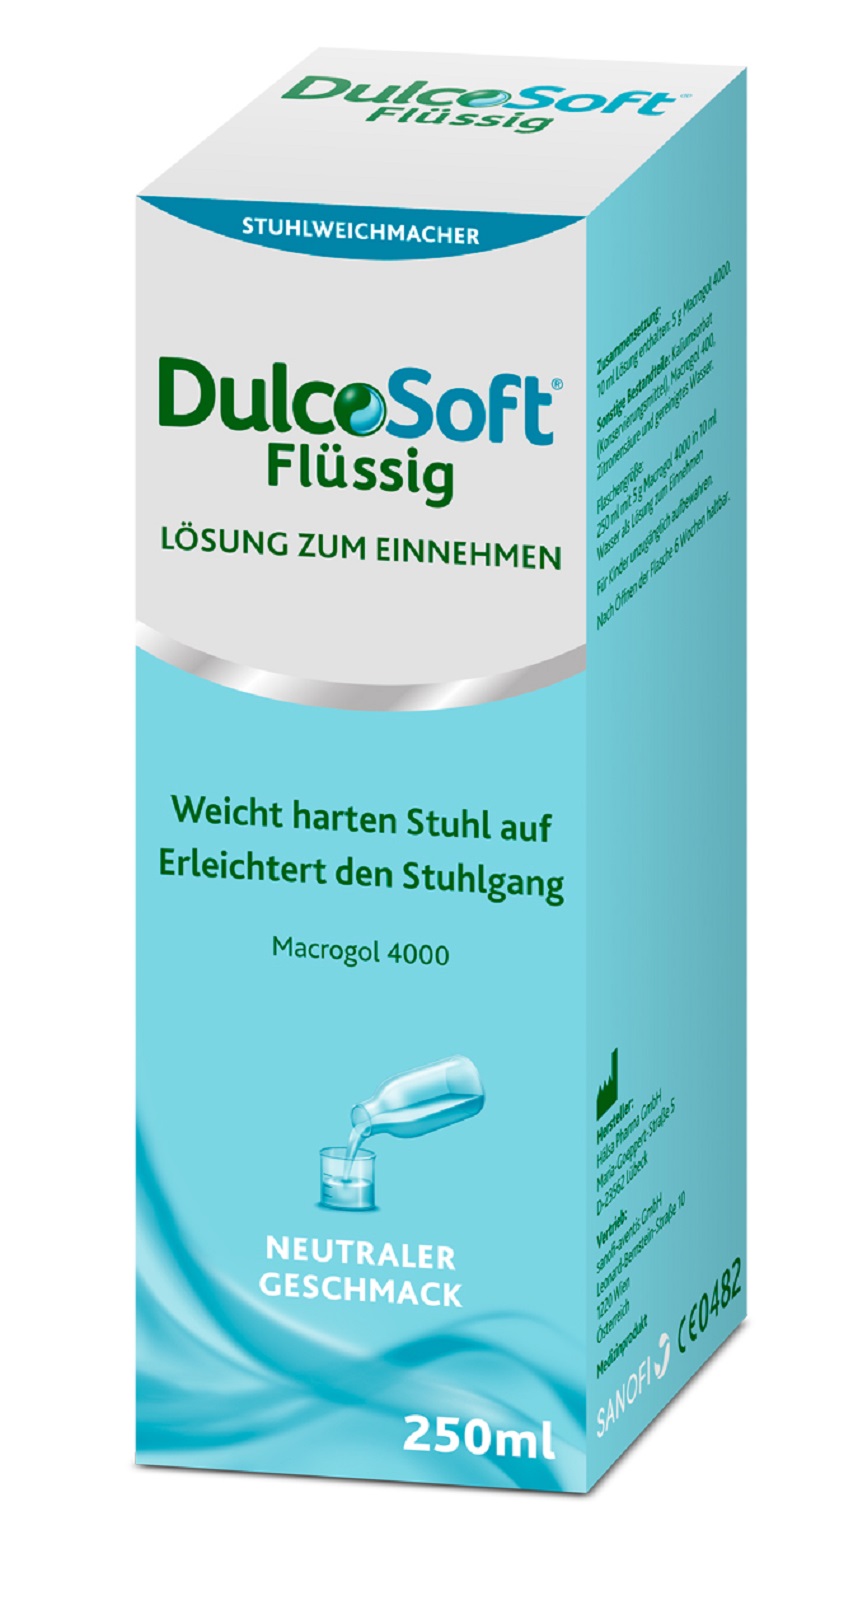 DulcoSoft® Flüssig